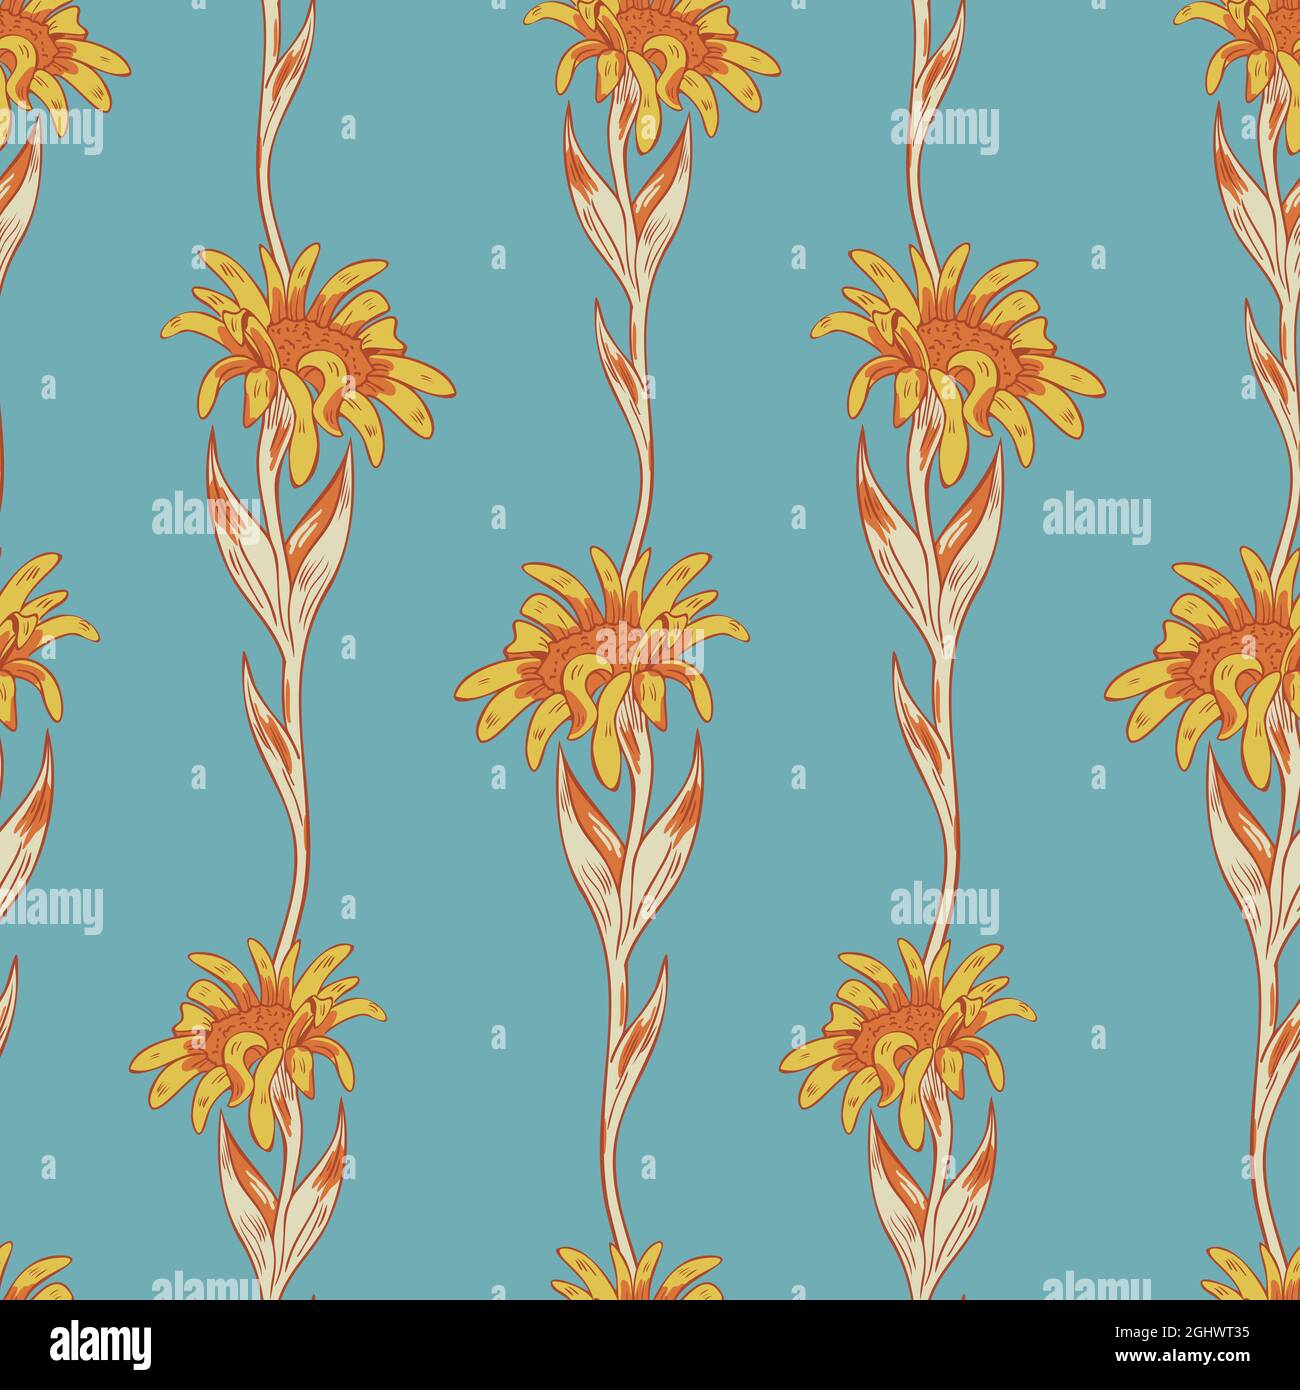 Vektor nahtlose Muster mit hellen Blumen auf blauem Hintergrund. Kontrastierende Blumenverzierung. Stock Vektor